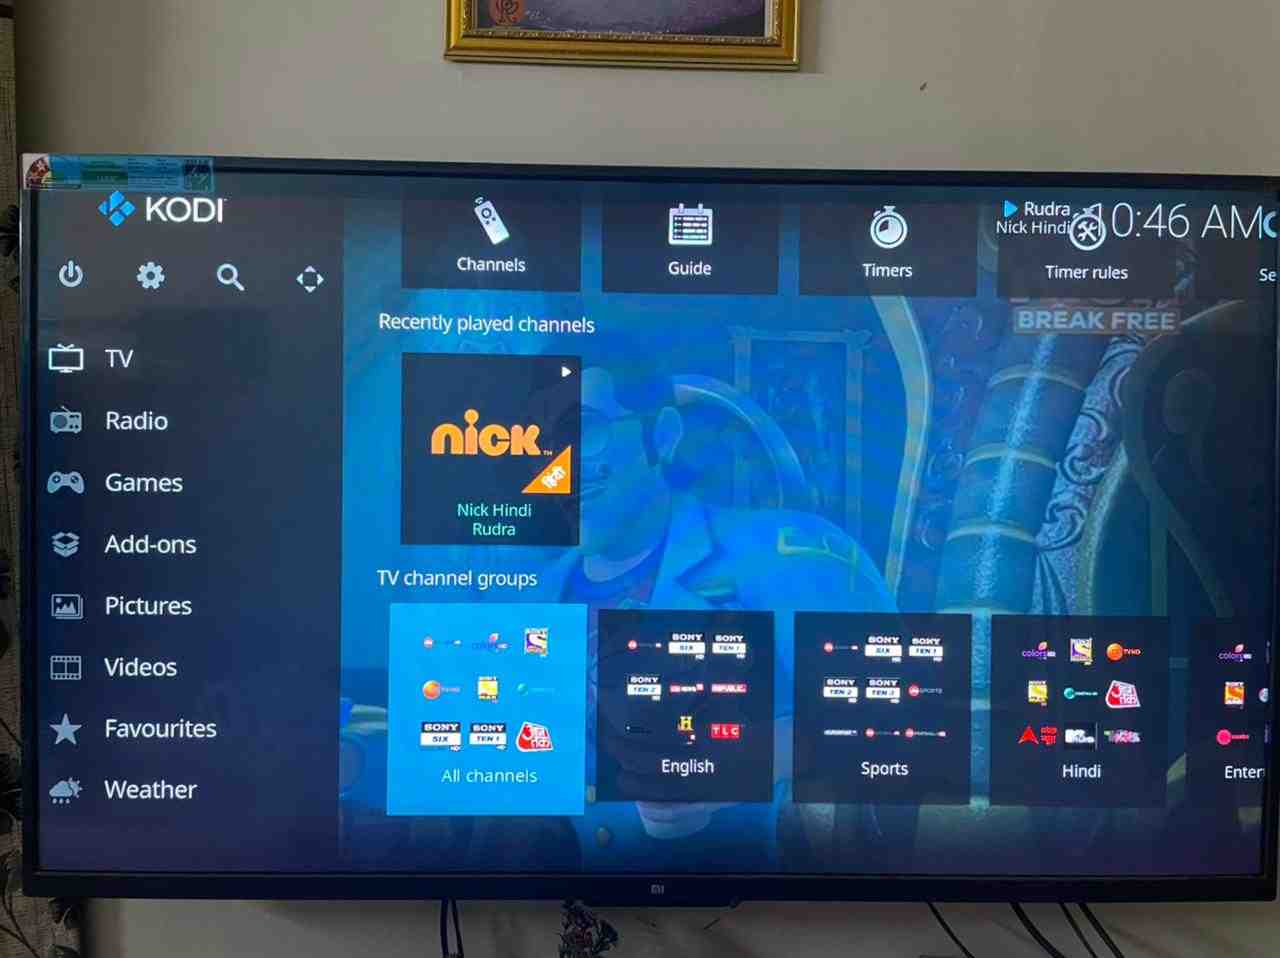 Comment regarder la TV en direct gratuitement sur internet avec Orange ?